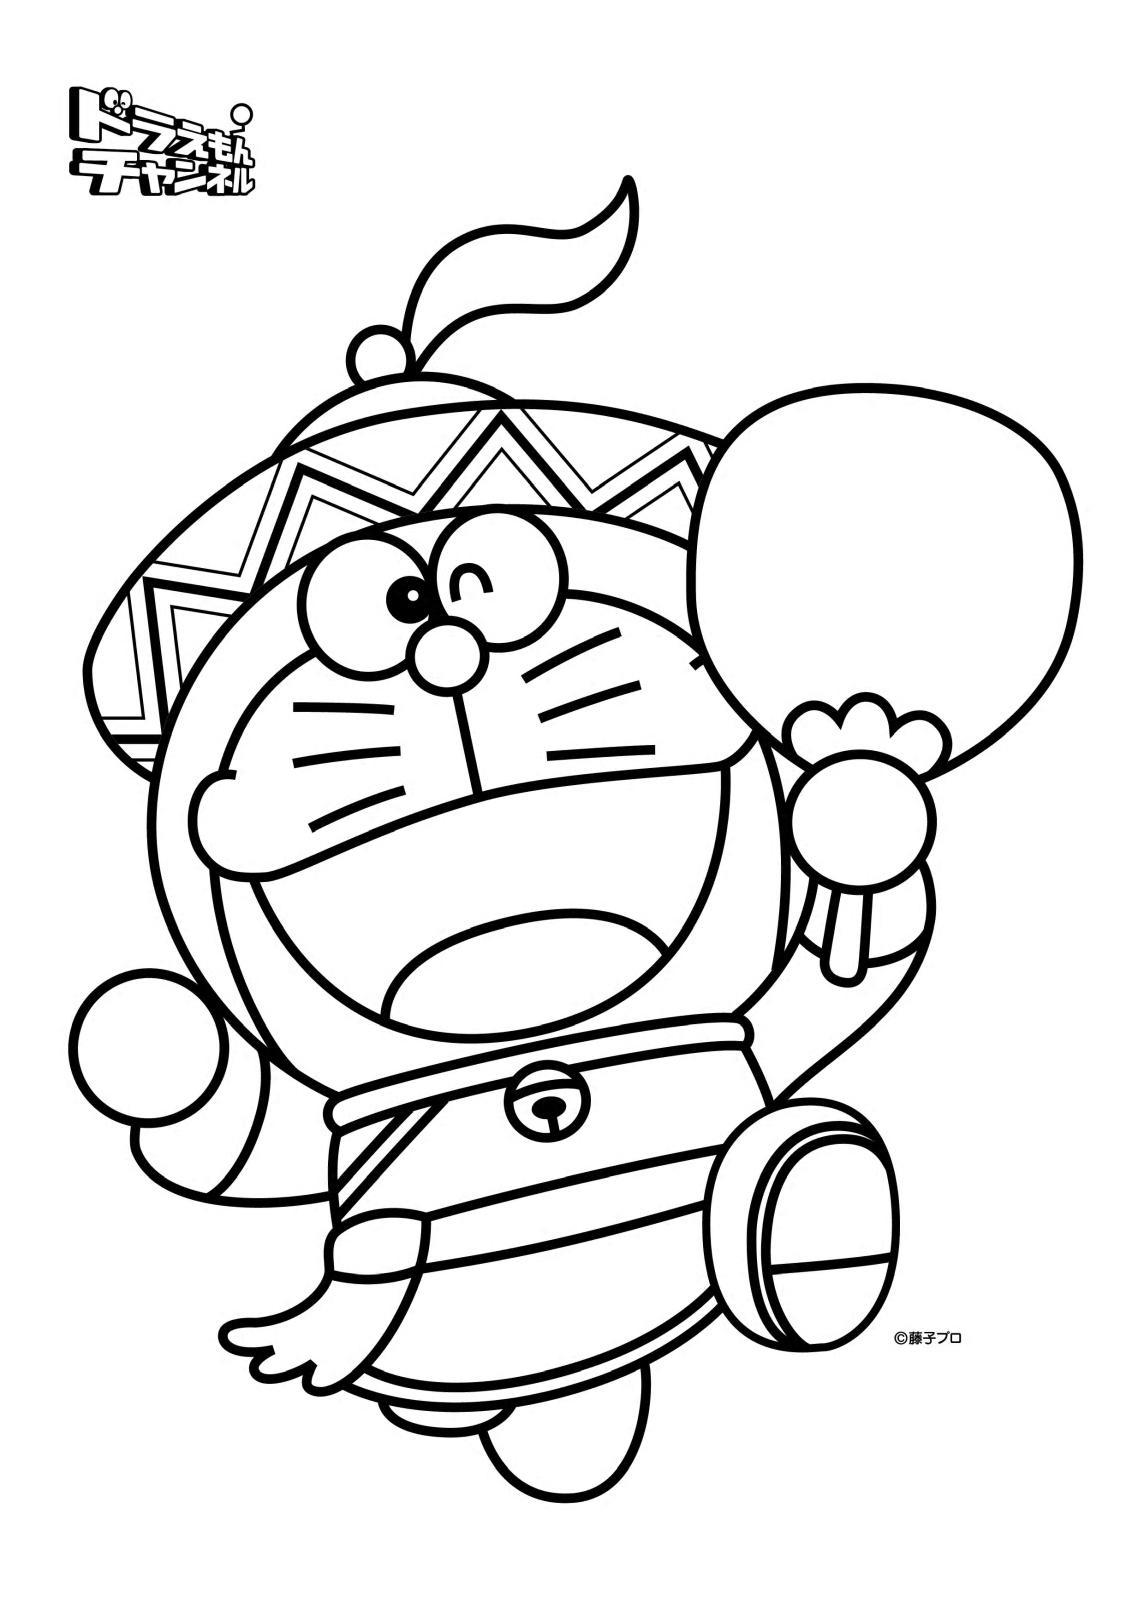 Tranh tô màu Doraemon cho bé cực đẹp